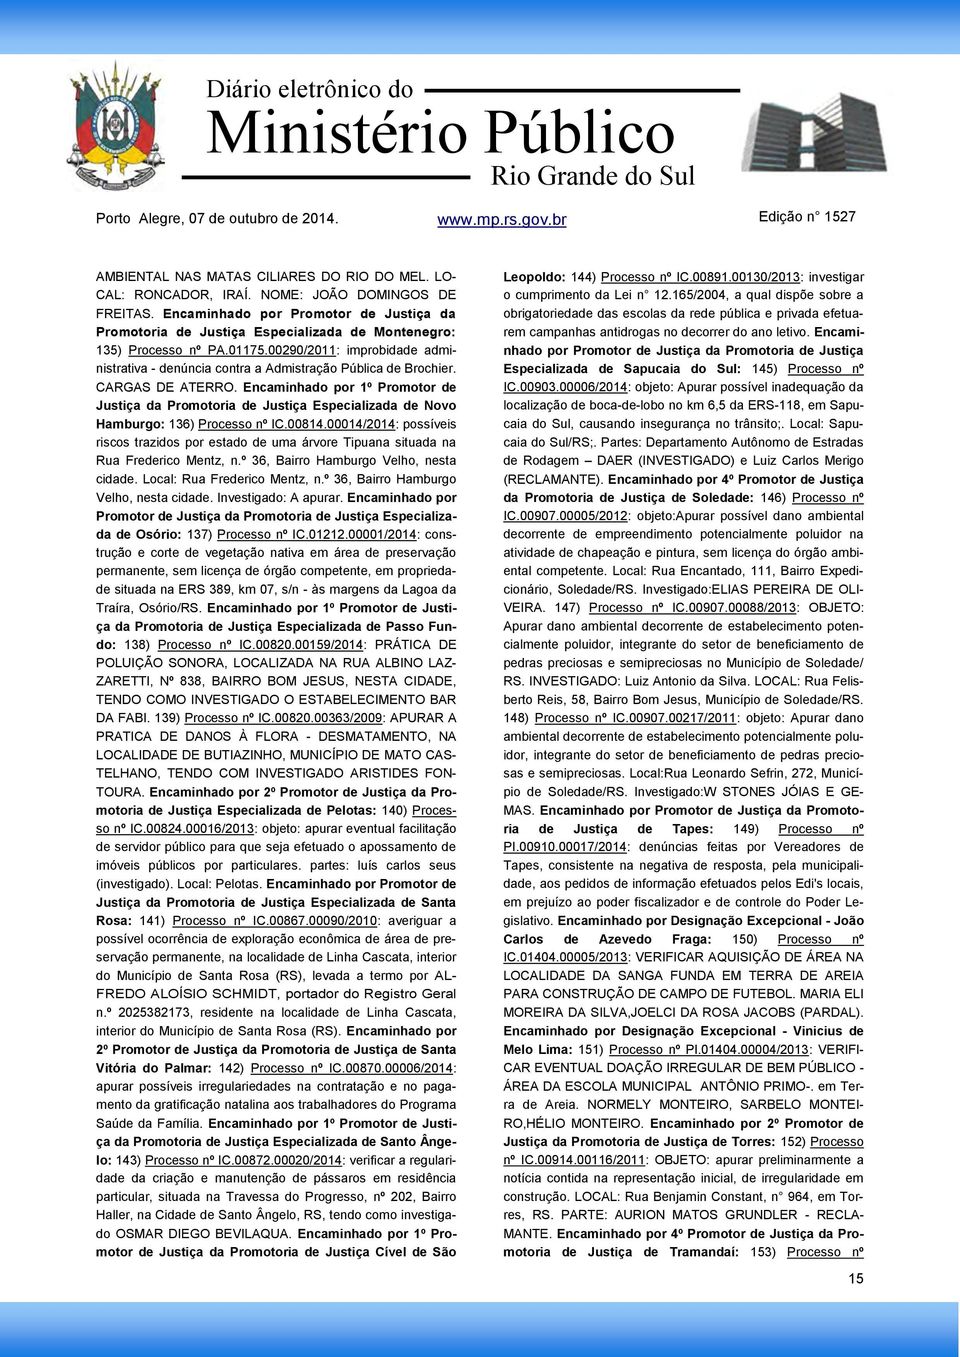 00290/2011: improbidade administrativa - denúncia contra a Admistração Pública de Brochier. CARGAS DE ATERRO.